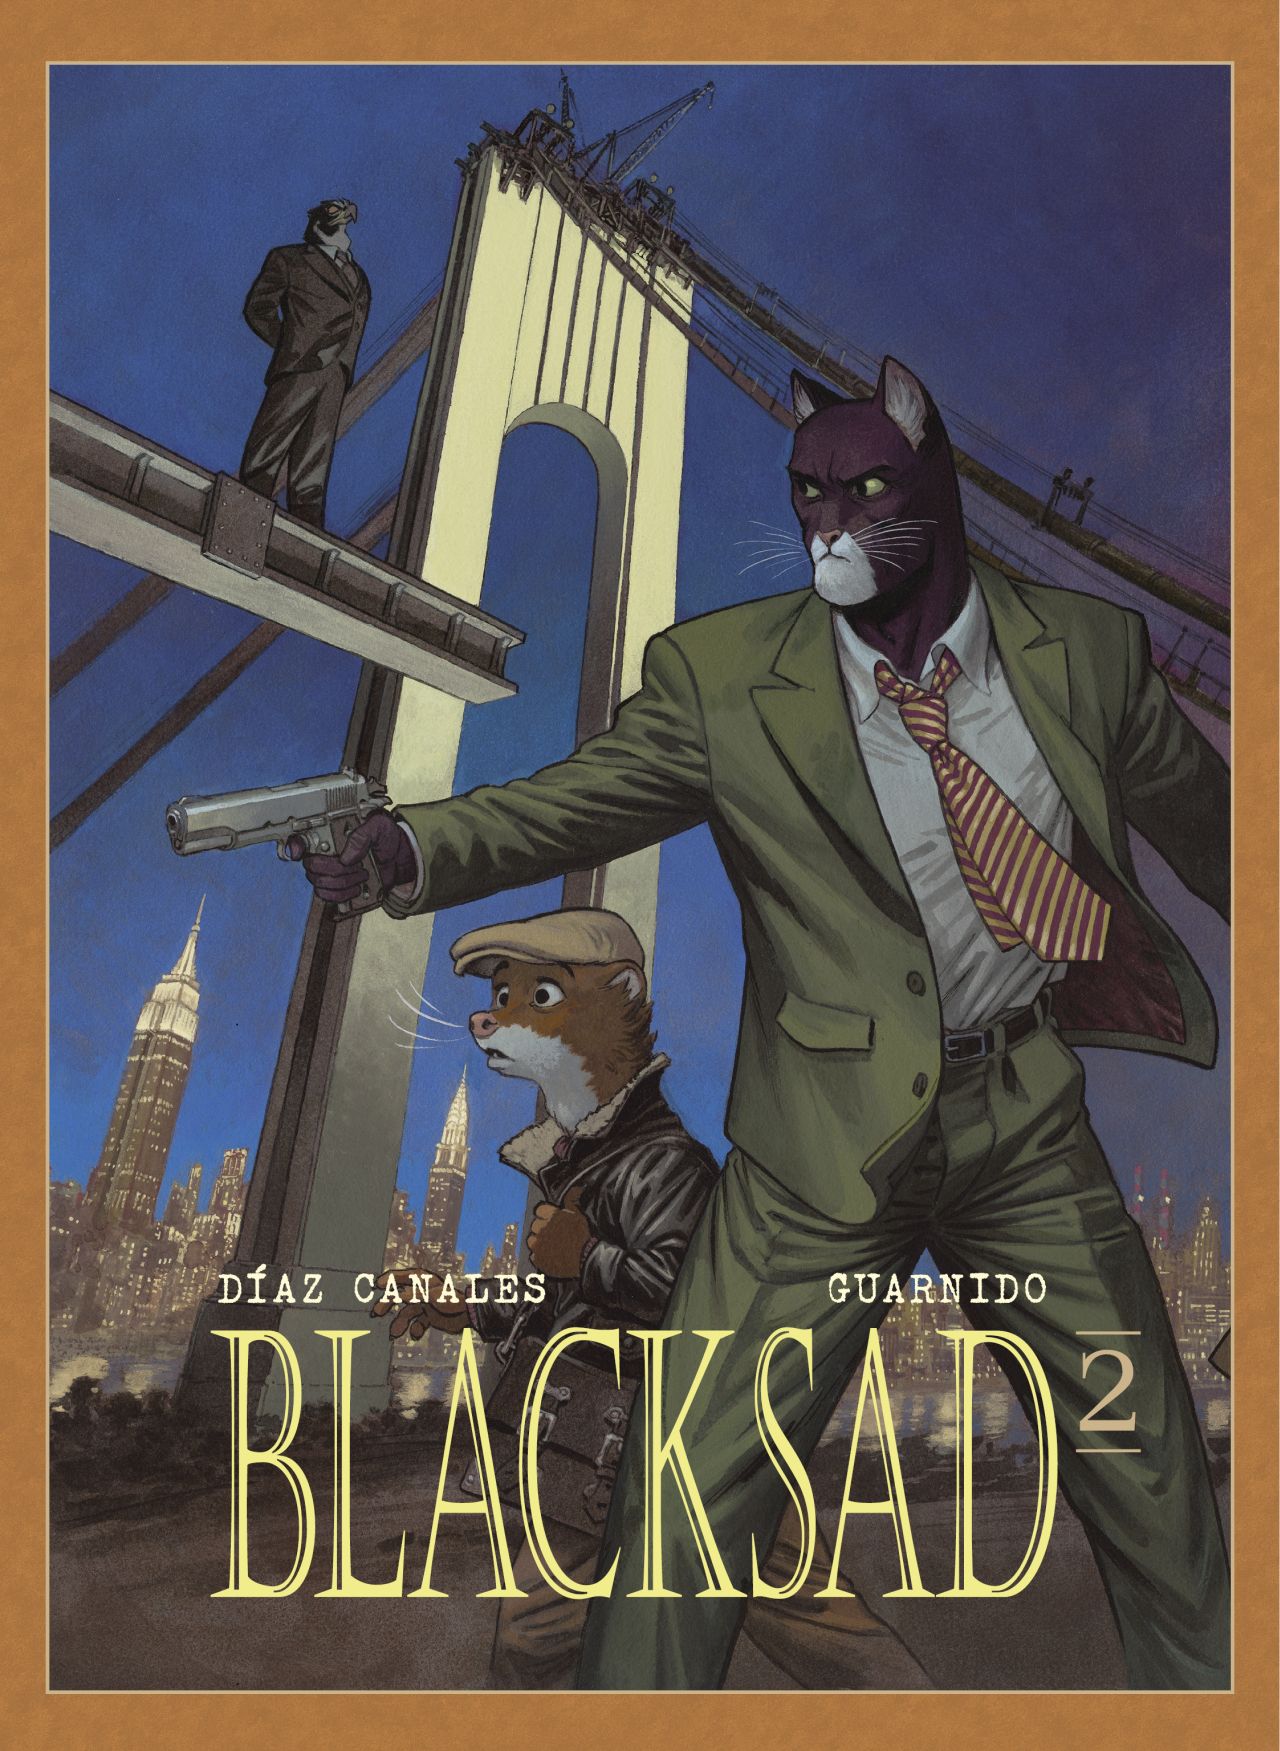 obrázek k novince - Blacksad 2 (váz.) (Mistrovská díla evropského komiksu)